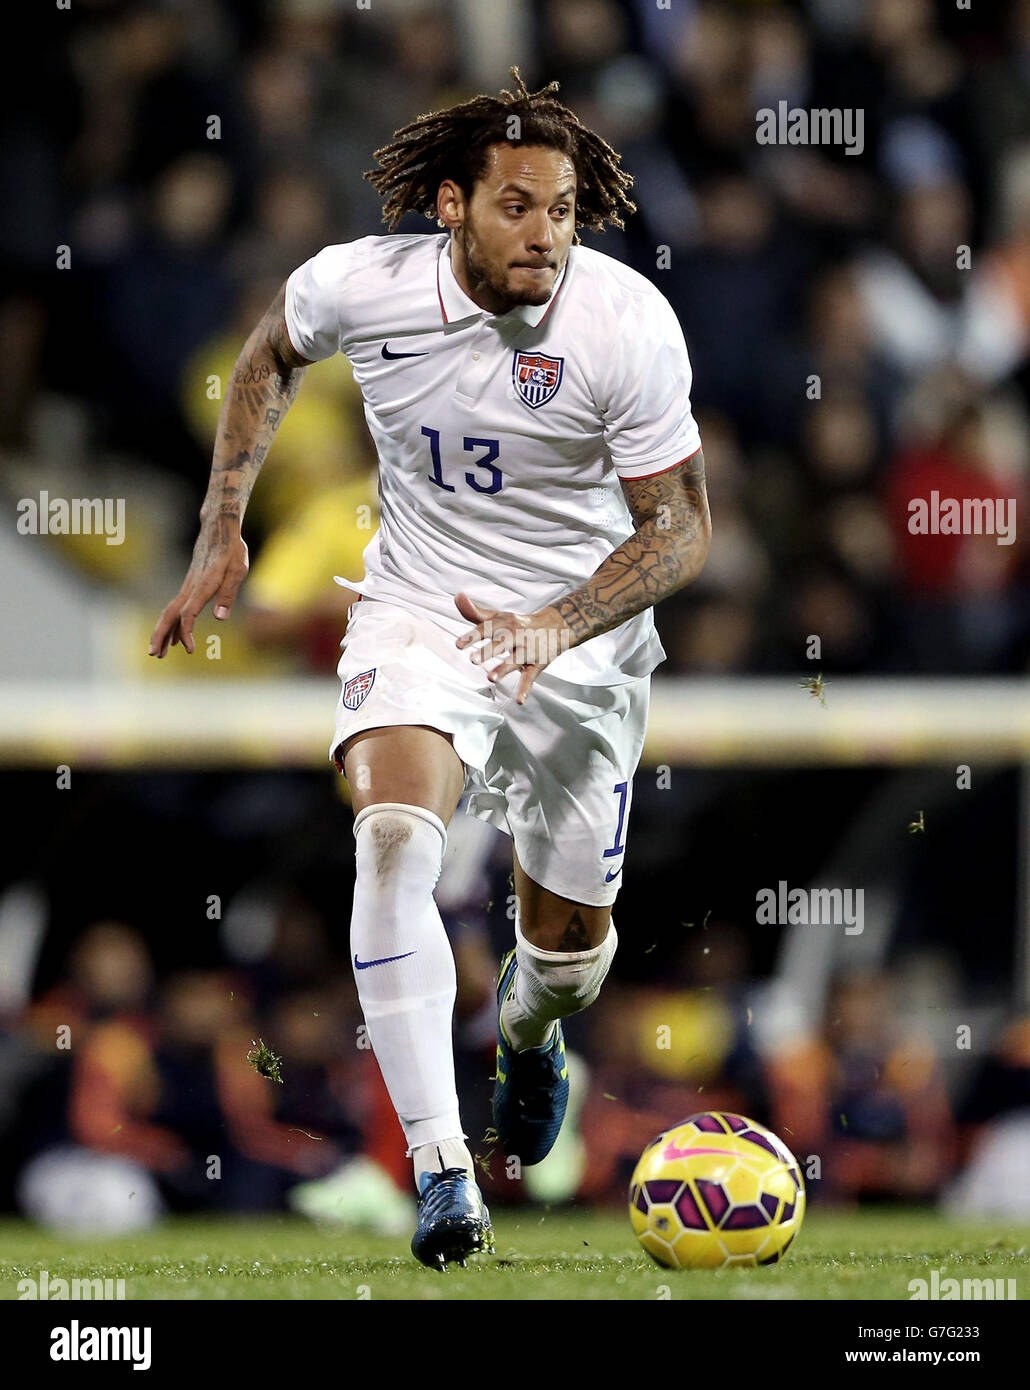 Soccer - International Friendly - Colombia v USA - Craven Cottage. USA's Jermaine Jones Stock Photo